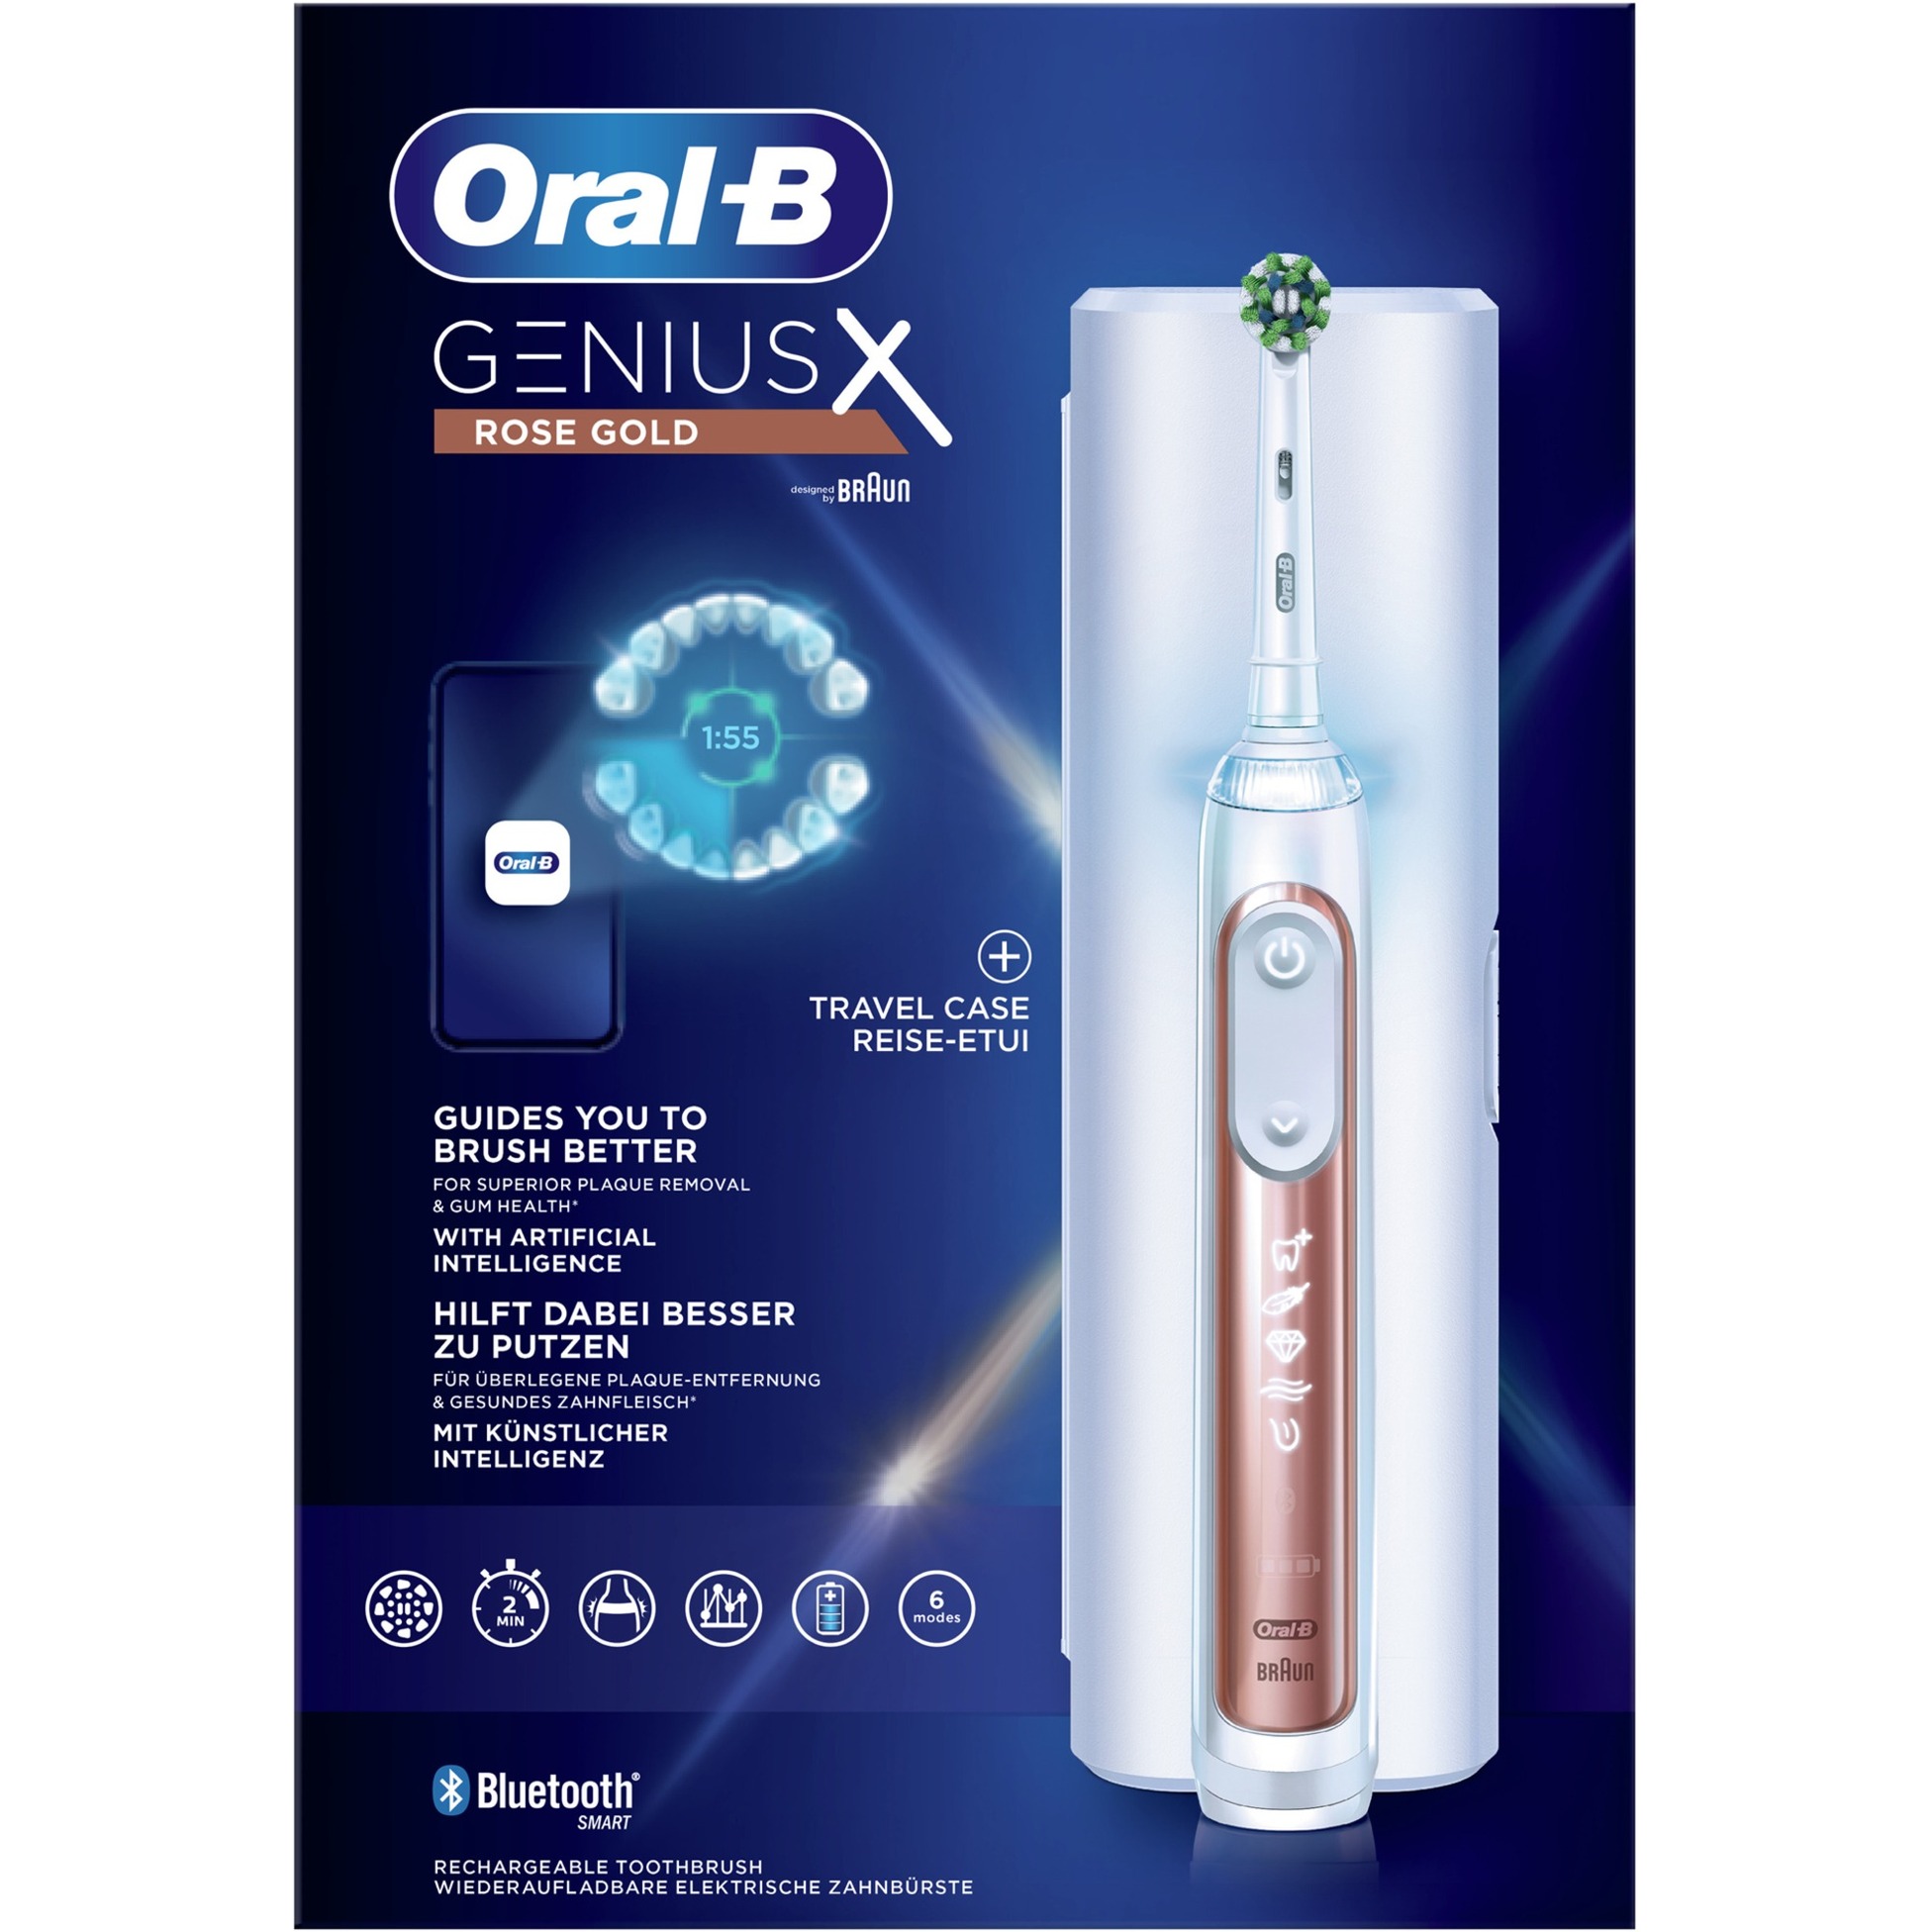 Image of Alternate - Oral-B Genius X, Elektrische Zahnbürste online einkaufen bei Alternate